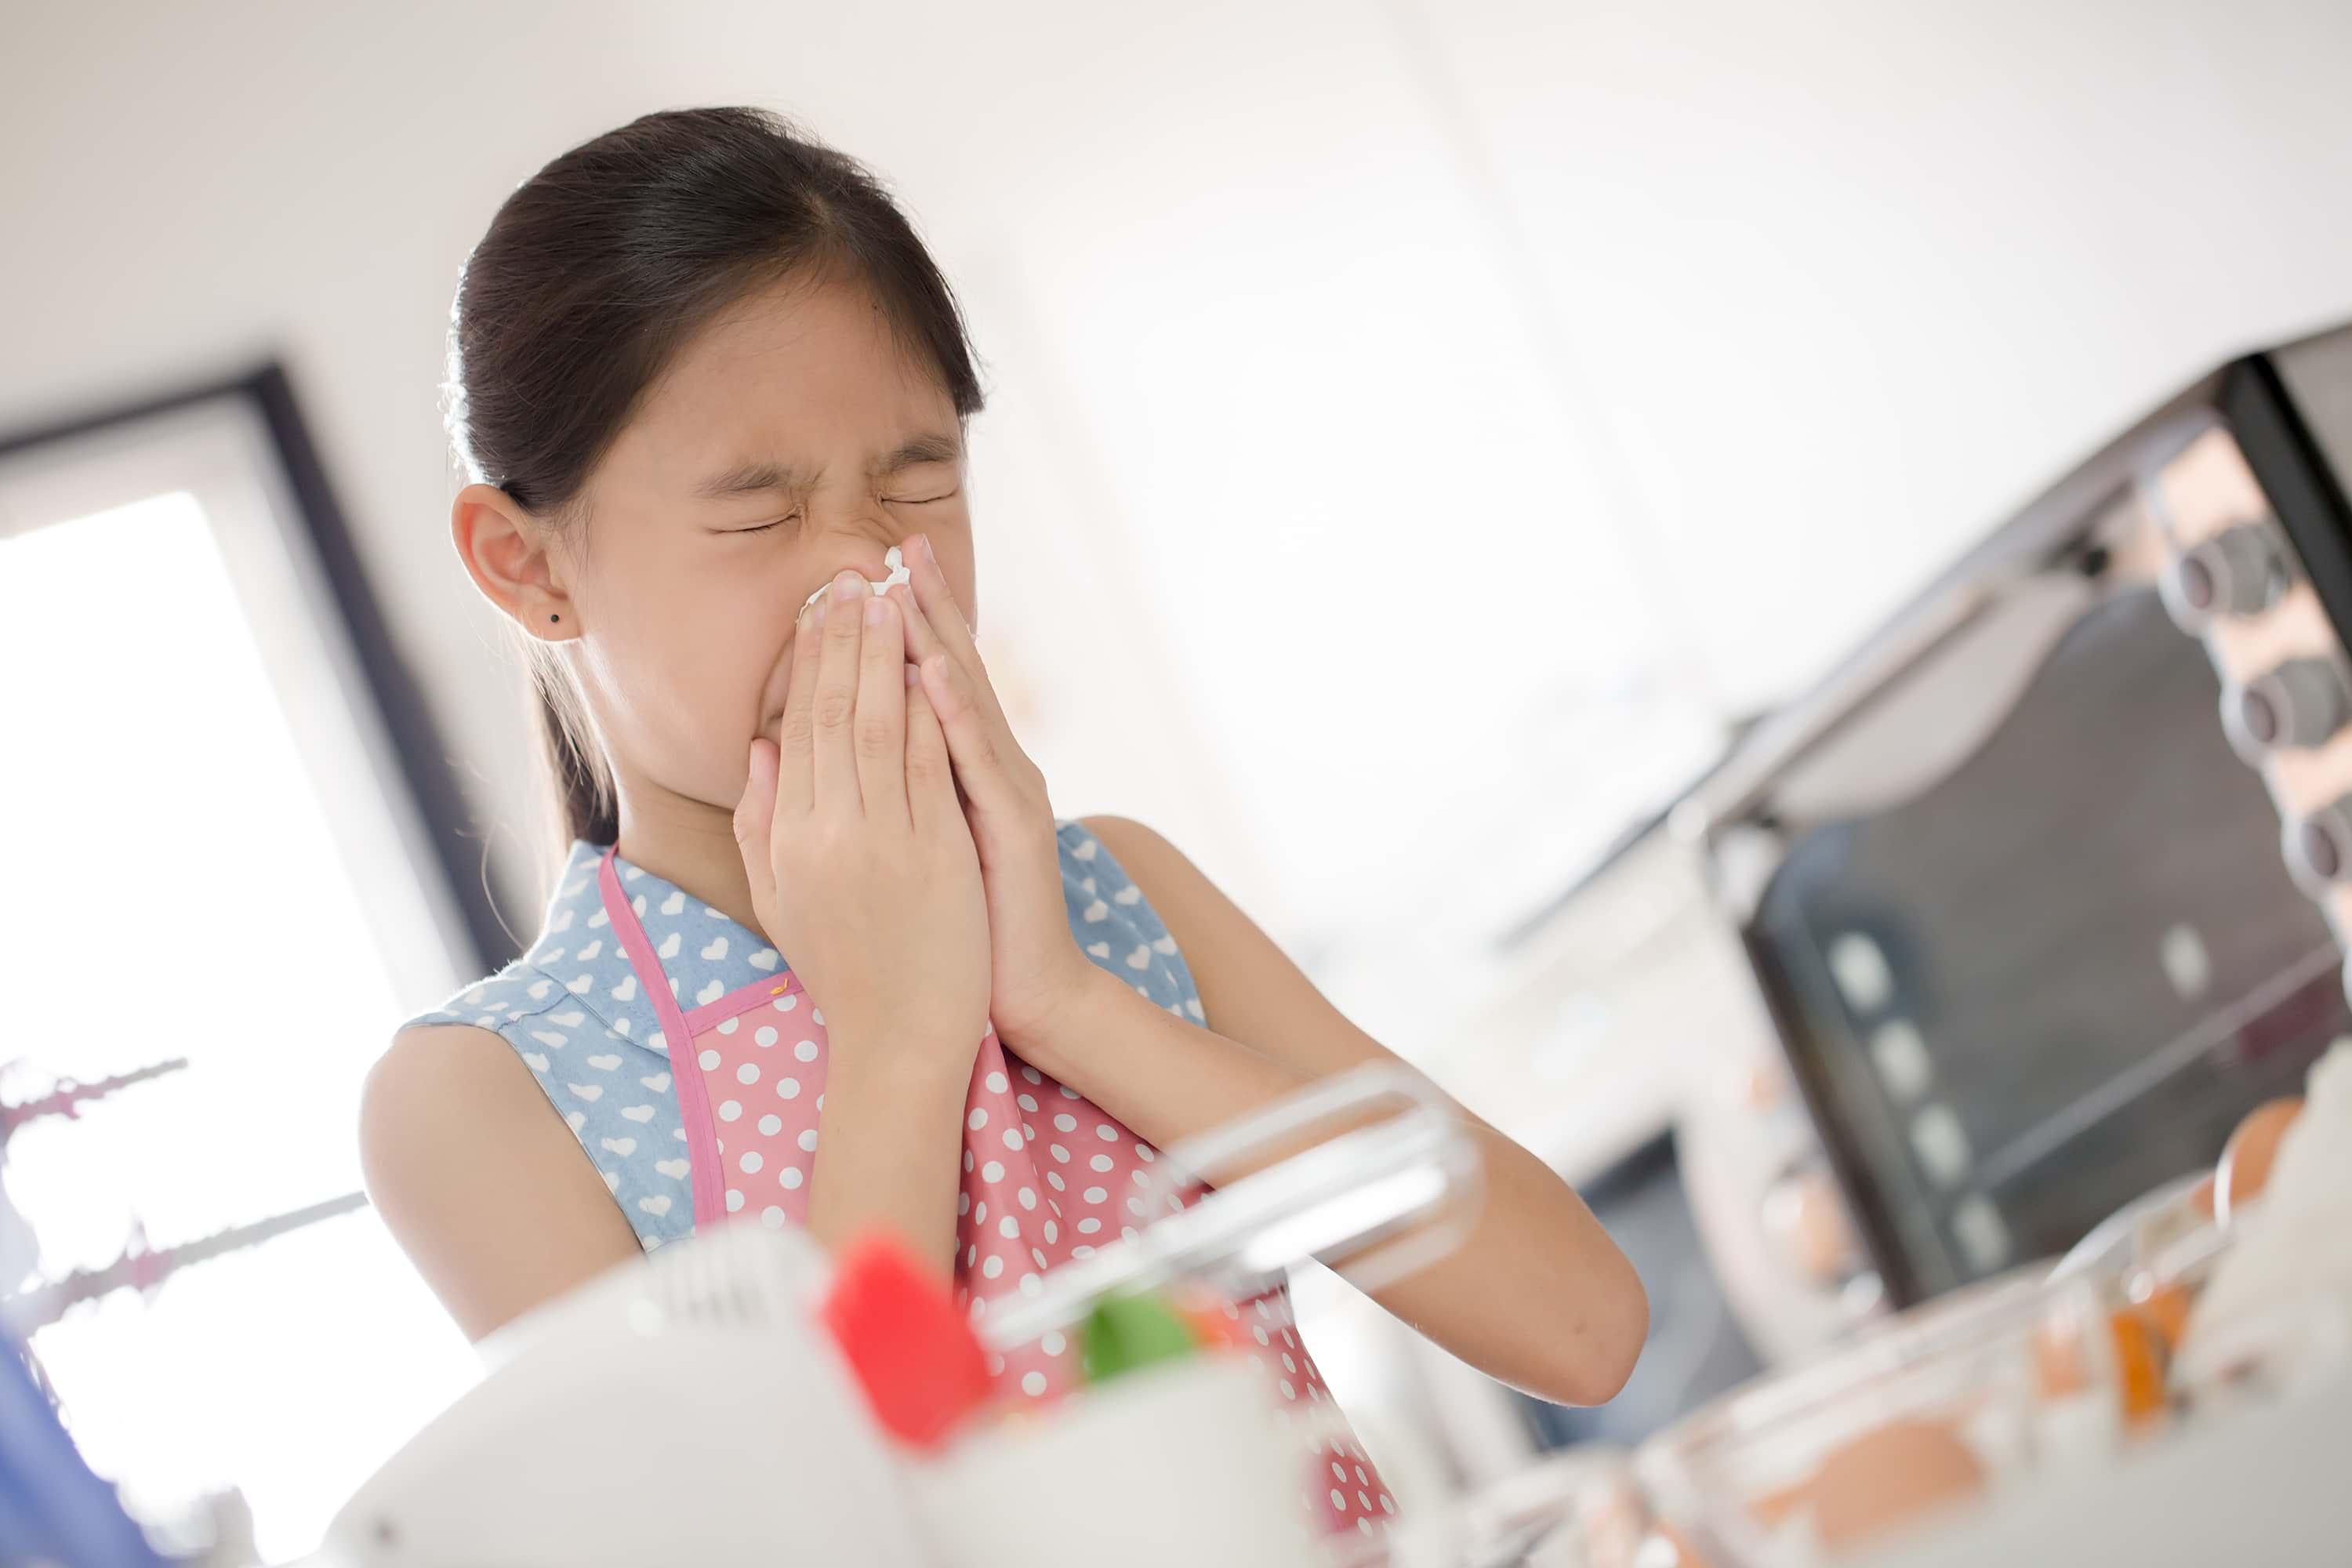 Child sneezing in kitchen